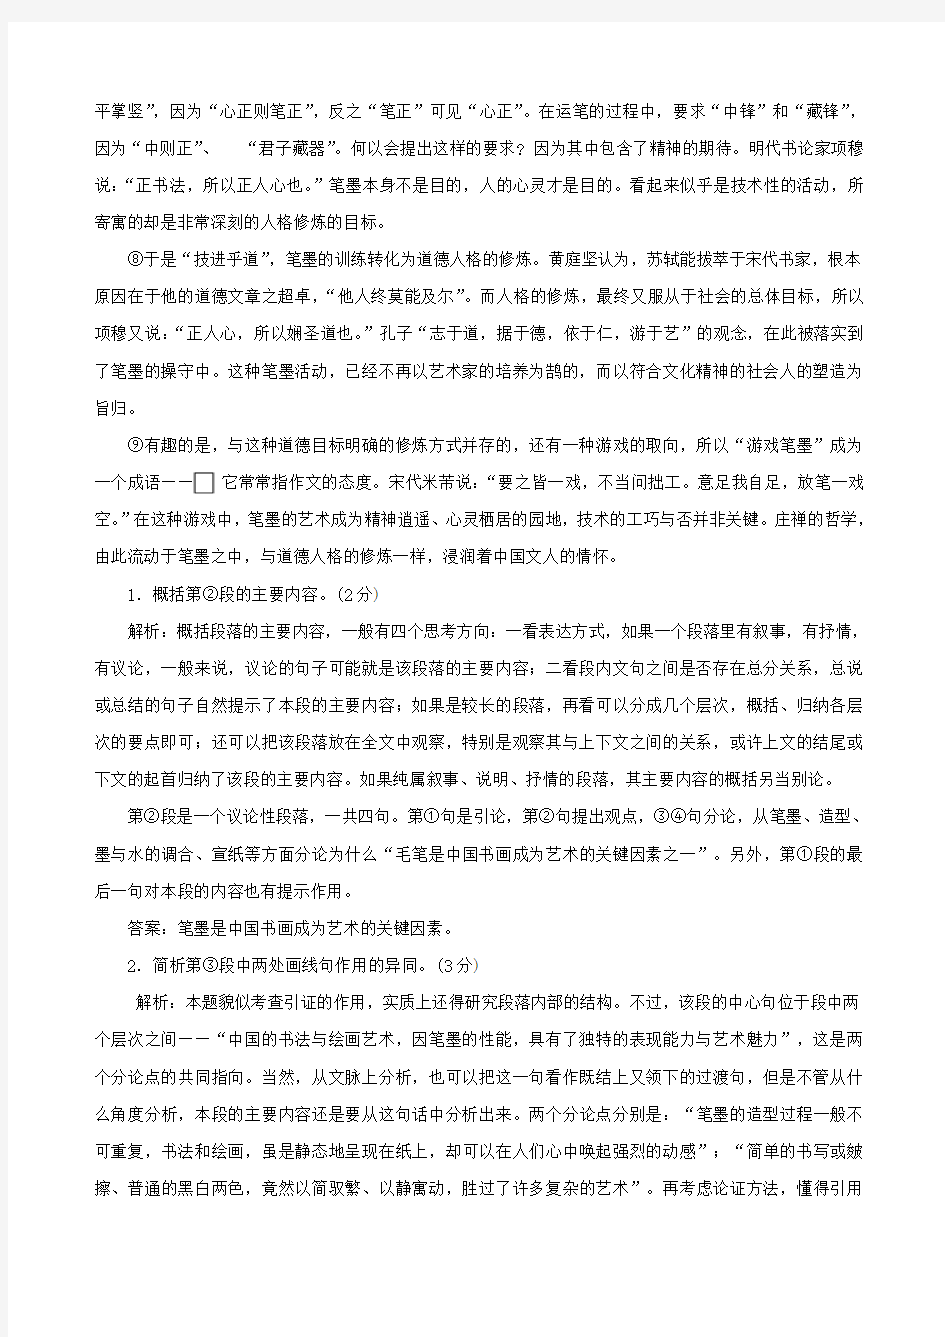 2010年上海市秋季高考语文试卷详解